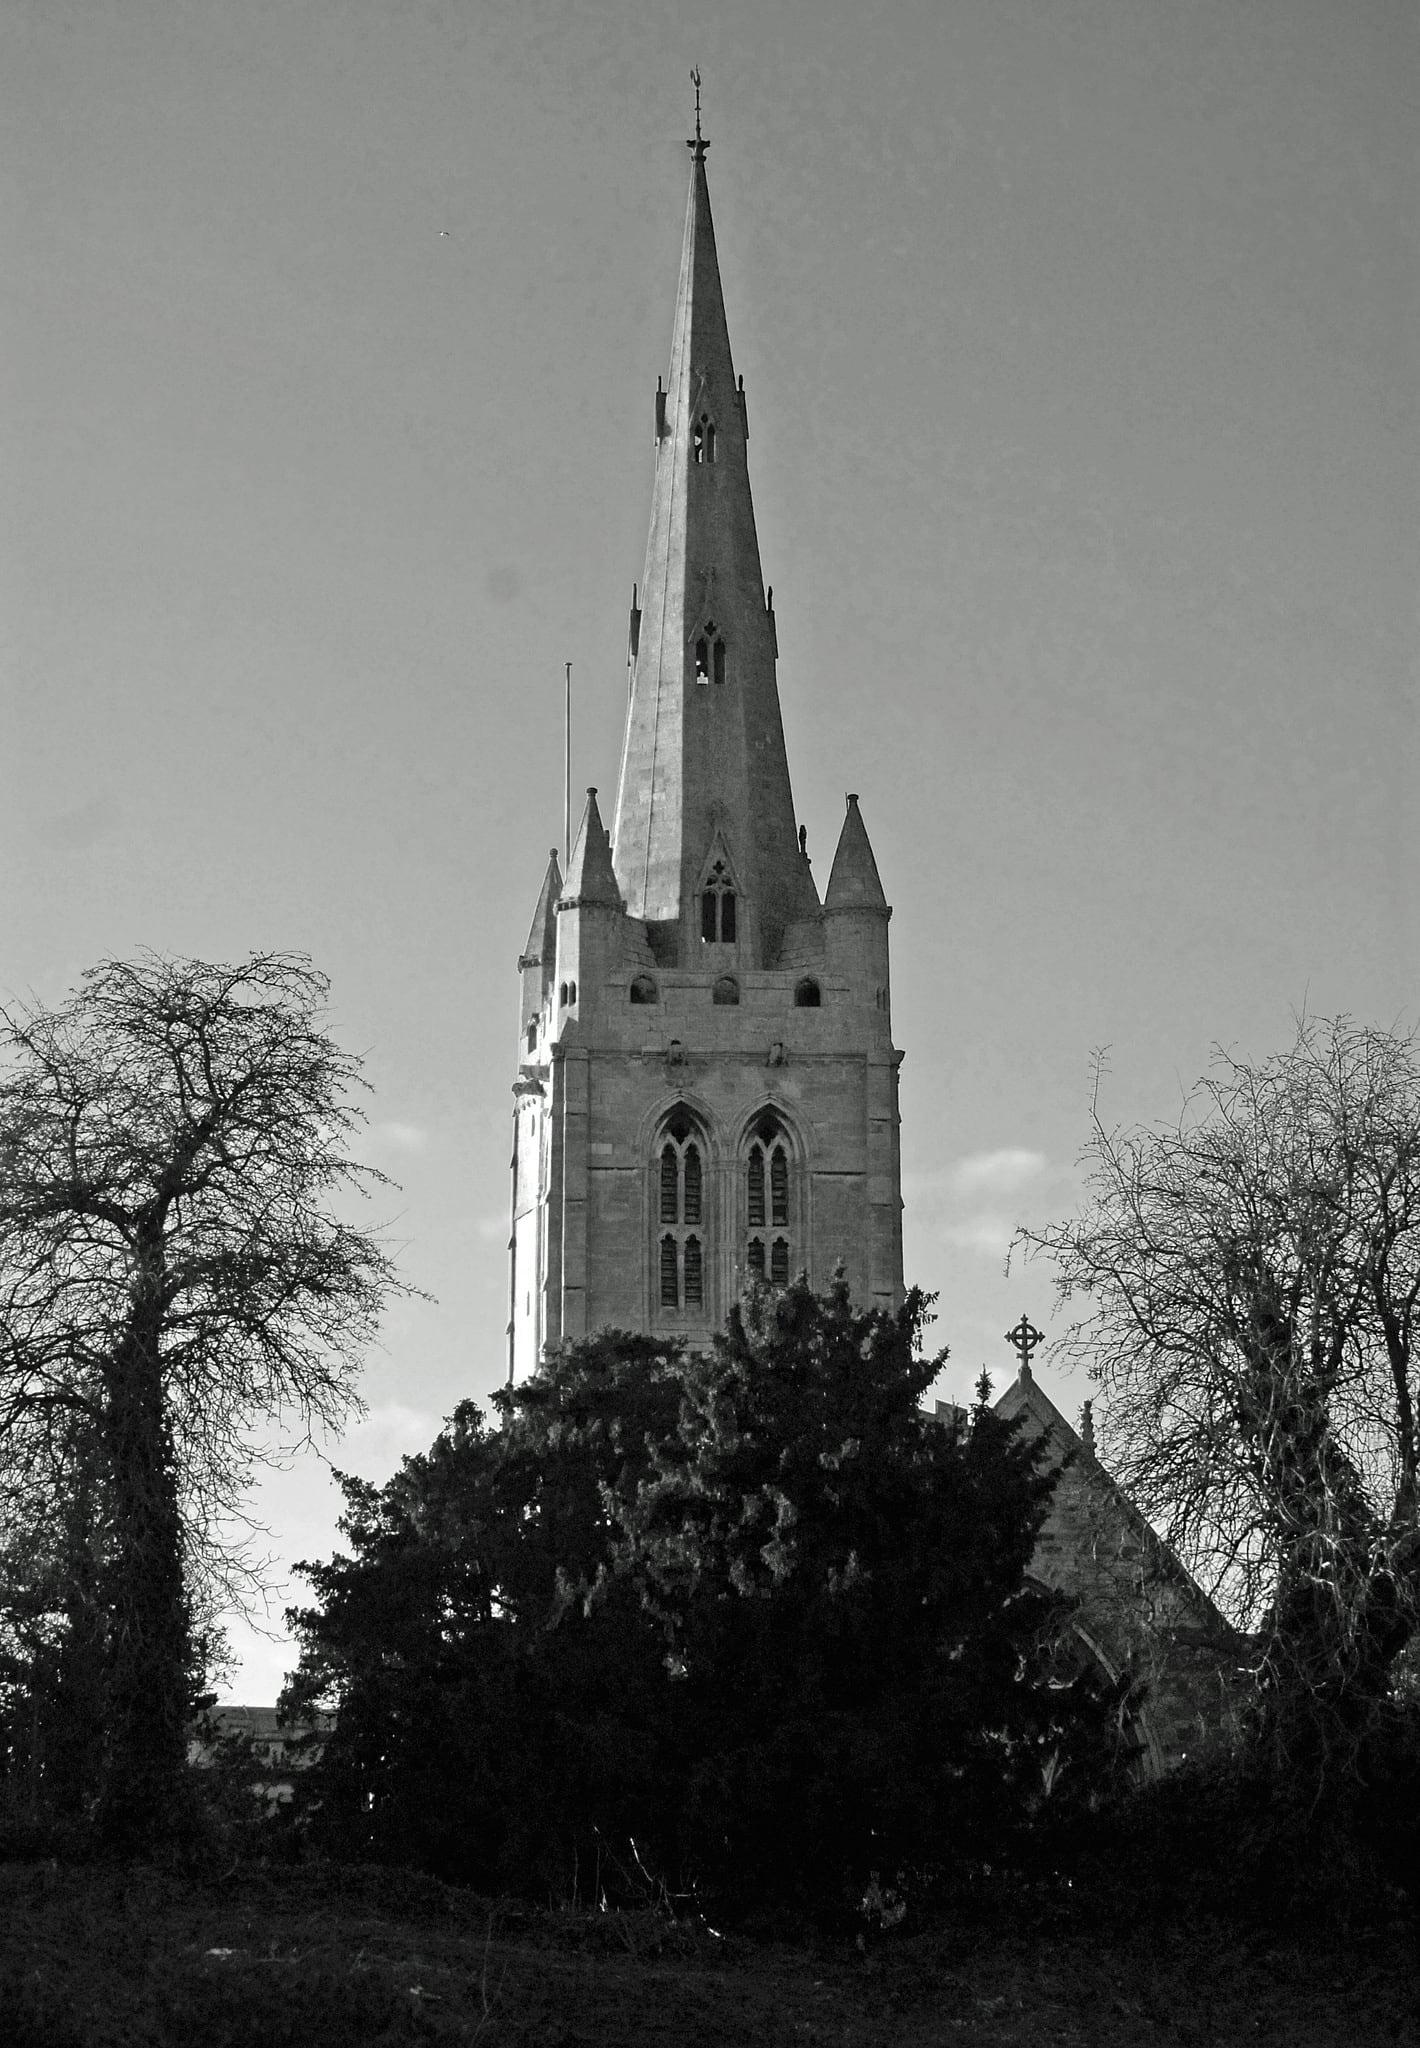 Bild von Oakham Castle. trees church monochrome blackwhite steeple rutland oakham allsaints